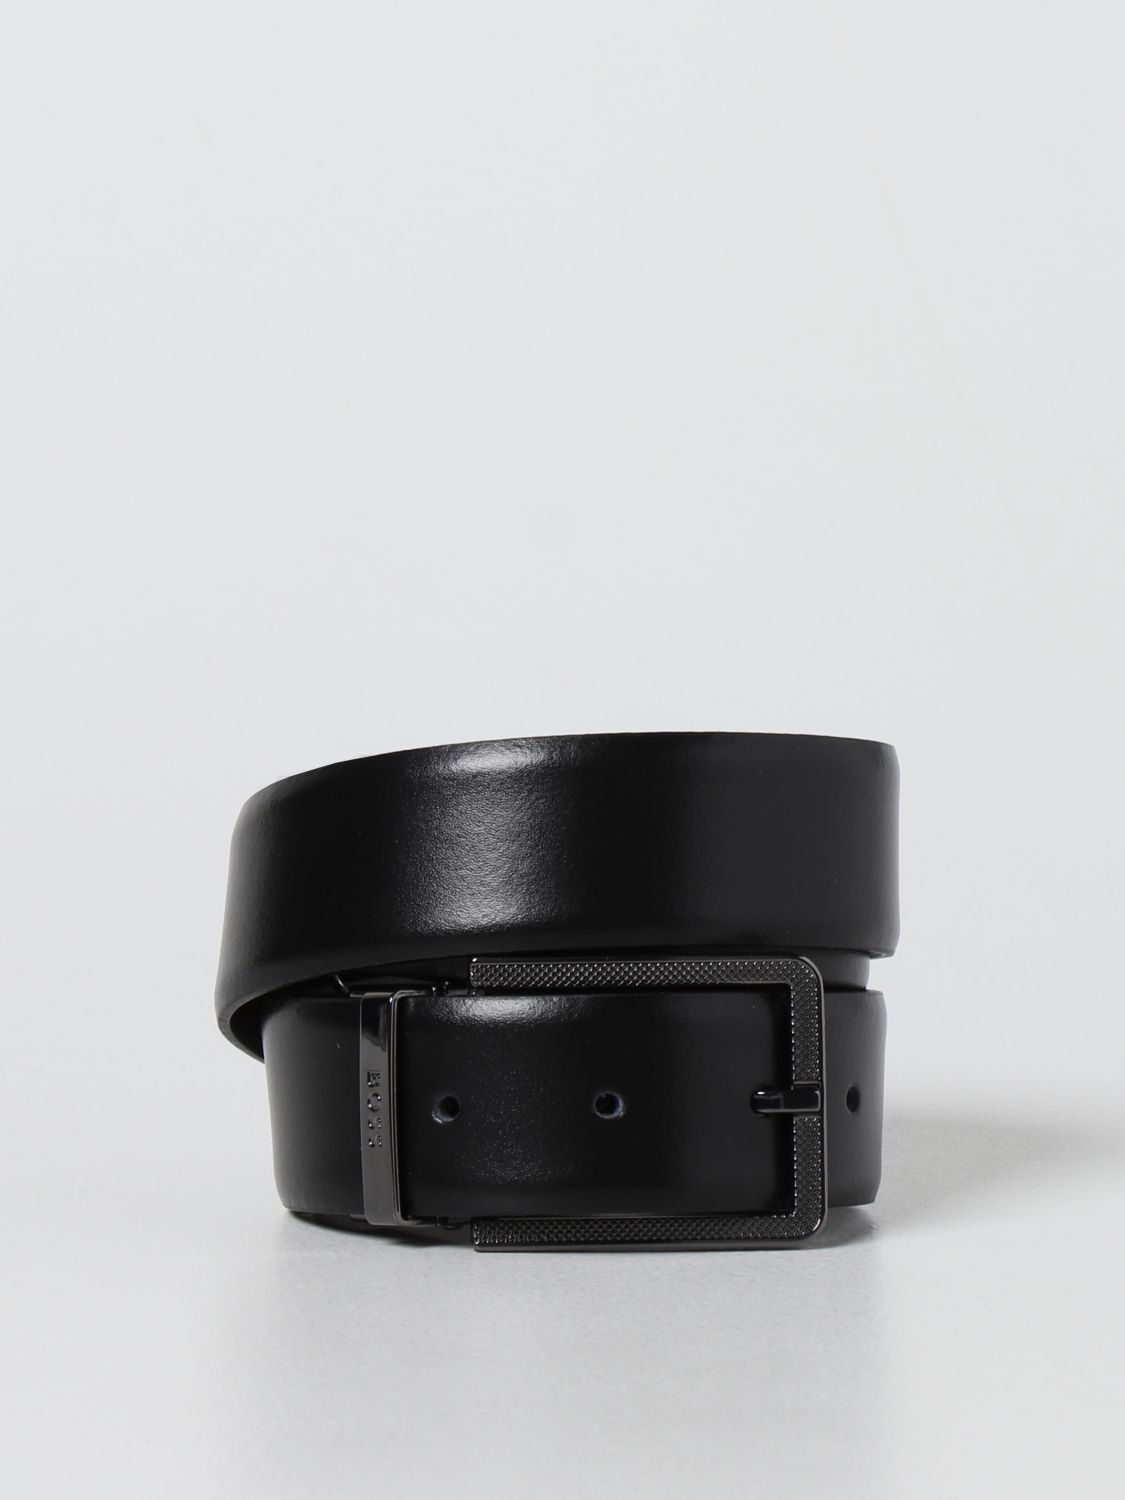 ボス メンズ BLACK Belt Leather Textured アクセサリー ベルト 驚きの価格が実現 ベルト